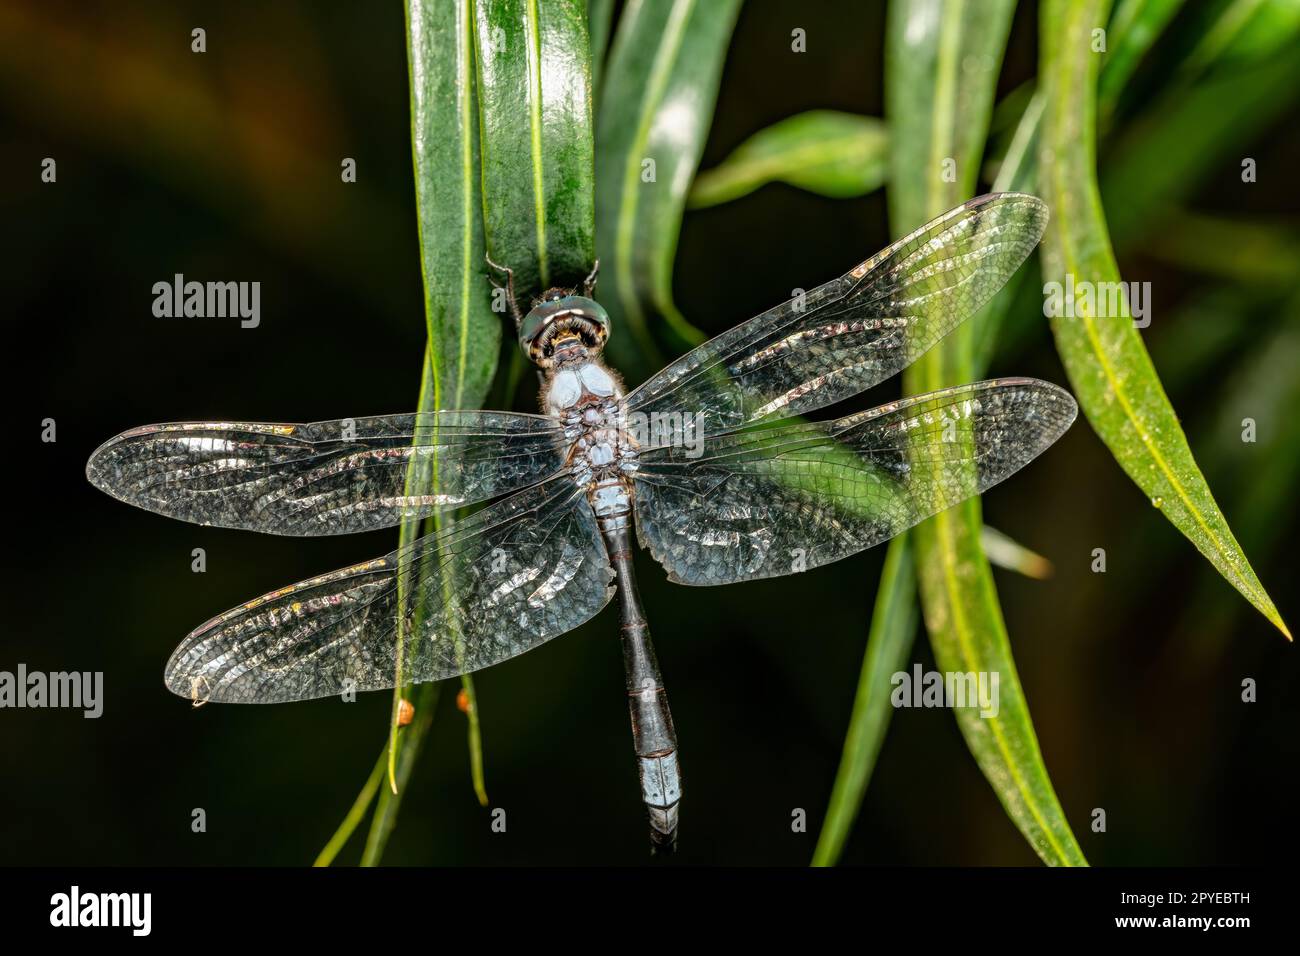 Zygonyx elisabethae, dragonfly Ranomafana national park, Madagascar wildlife animal Stock Photo